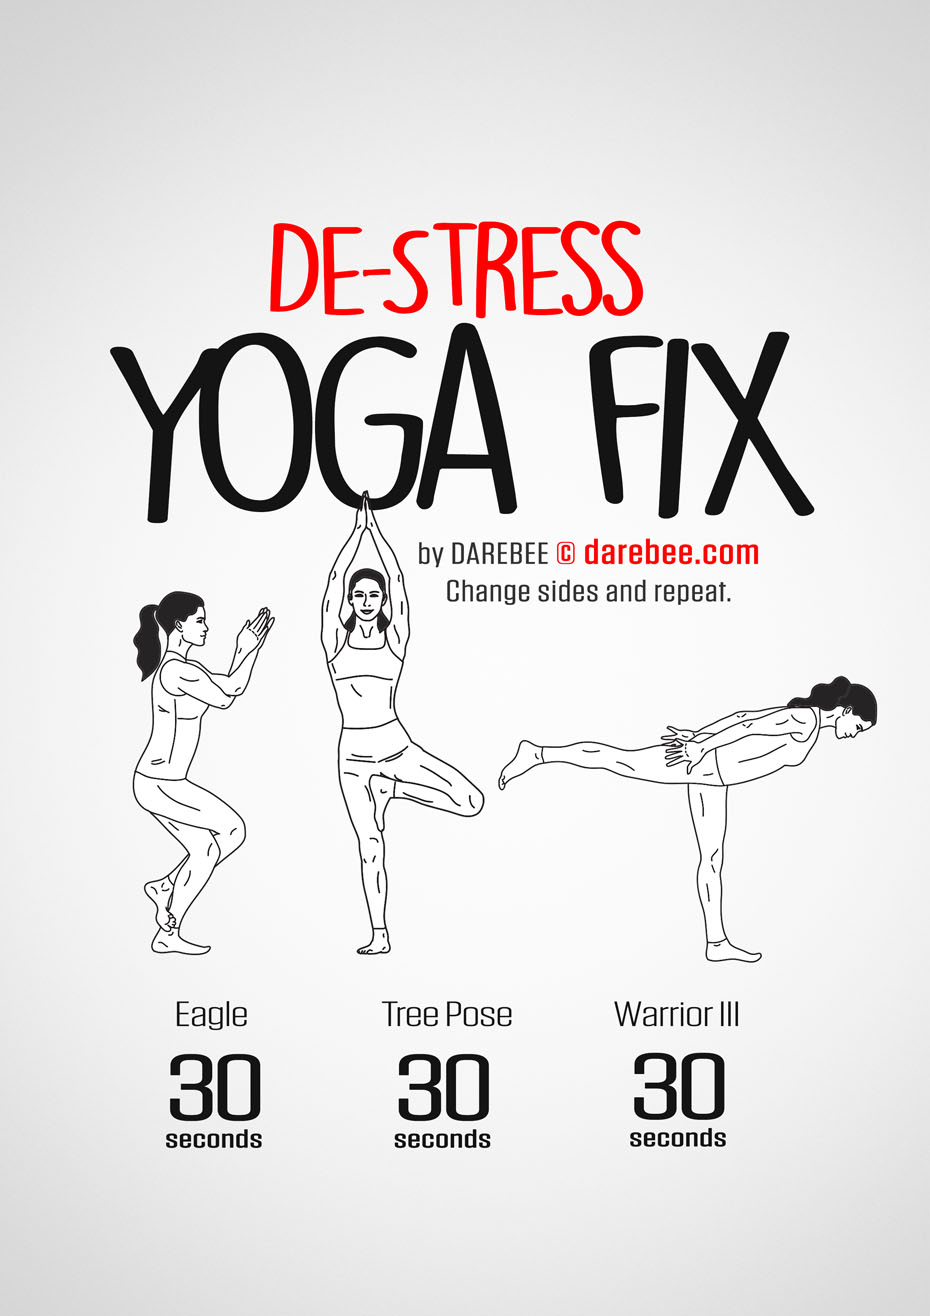 Yoga Fix